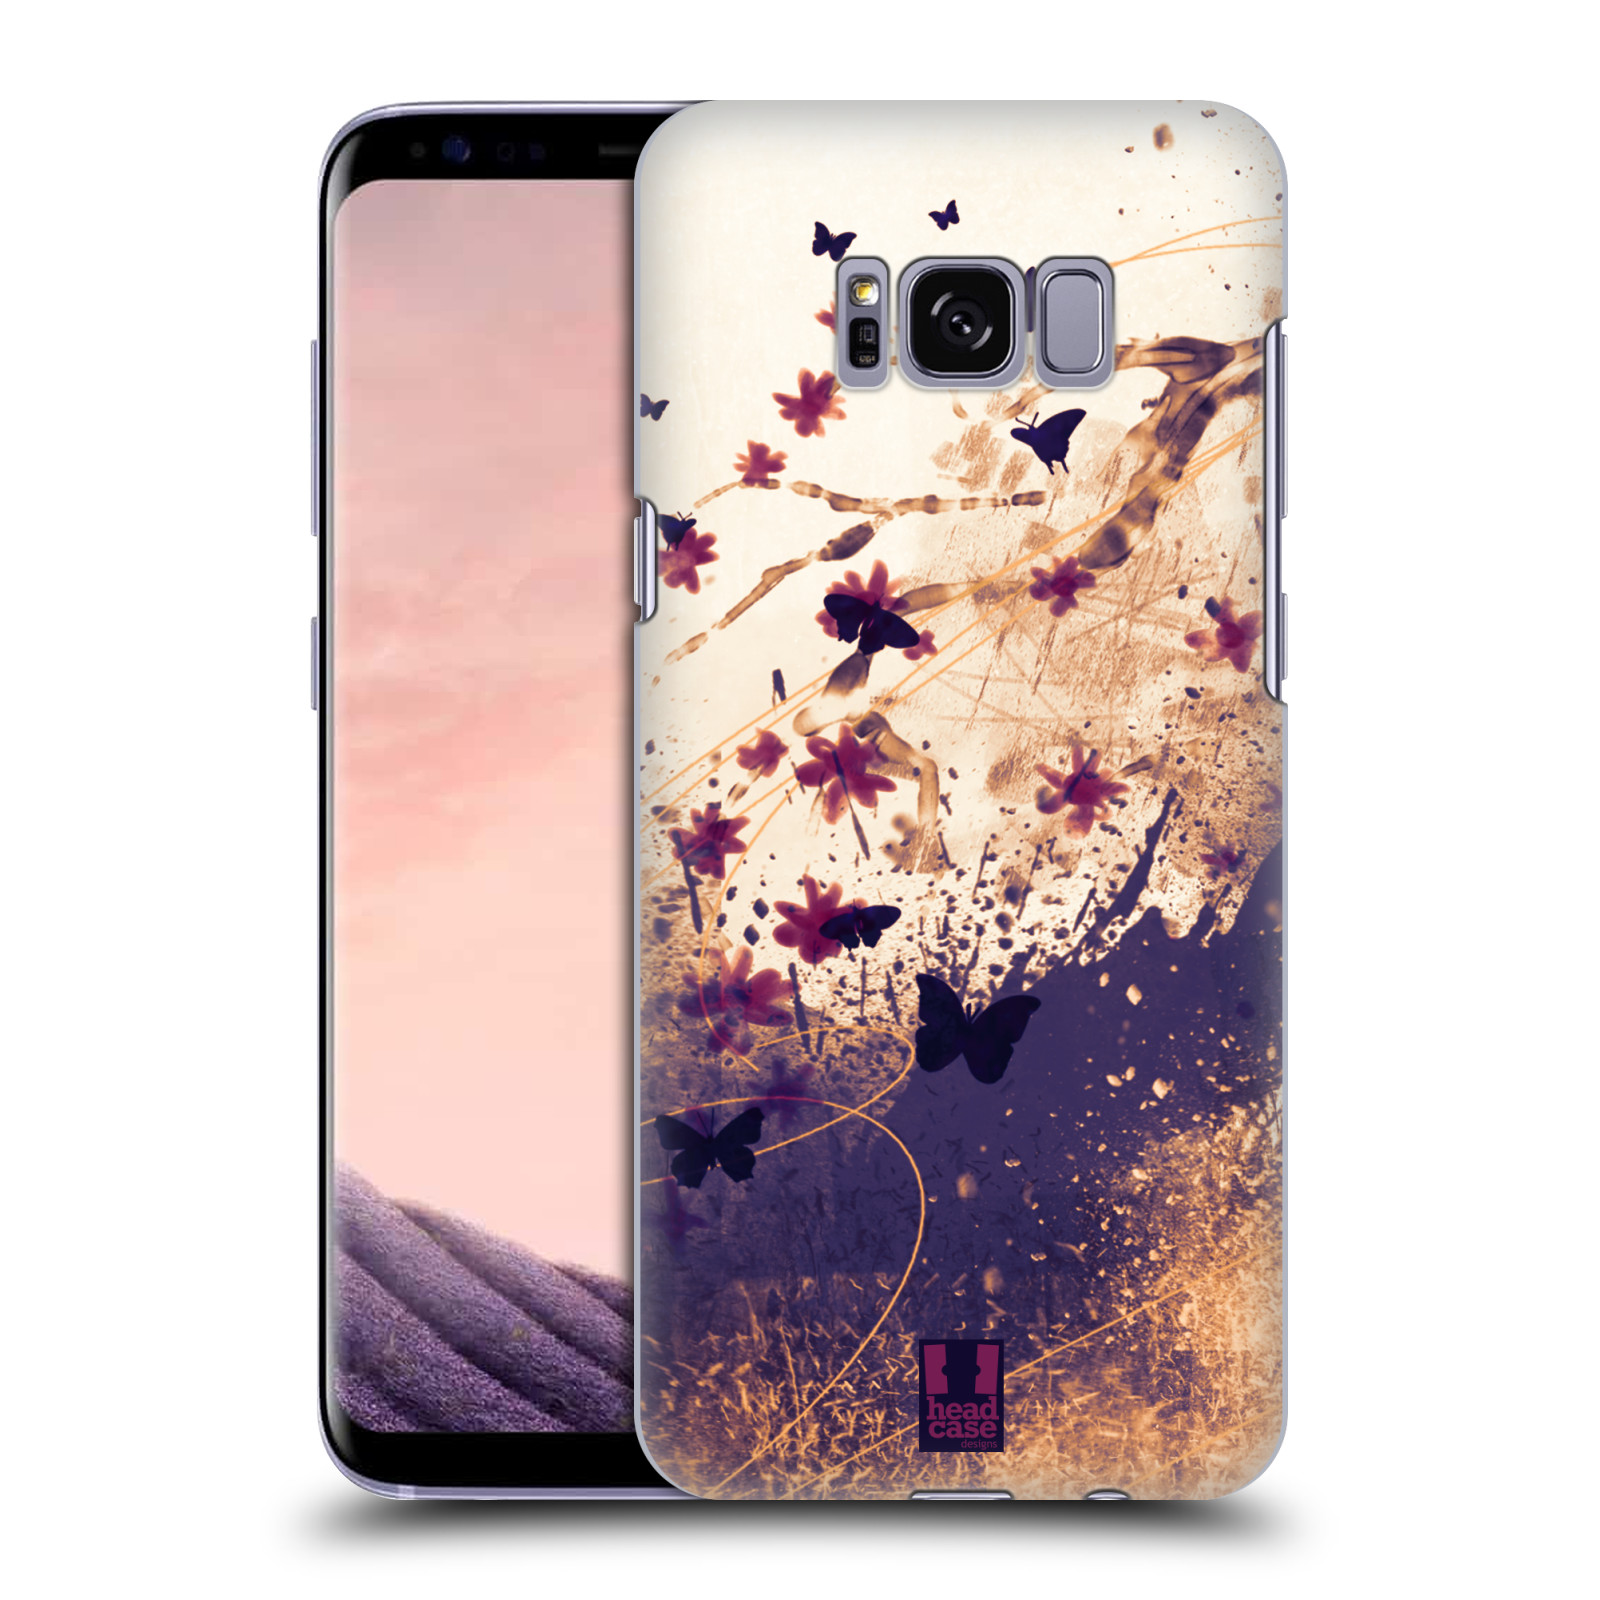 Zadní obal pro mobil Samsung Galaxy S8 - HEAD CASE - Barevné květy a motýlci